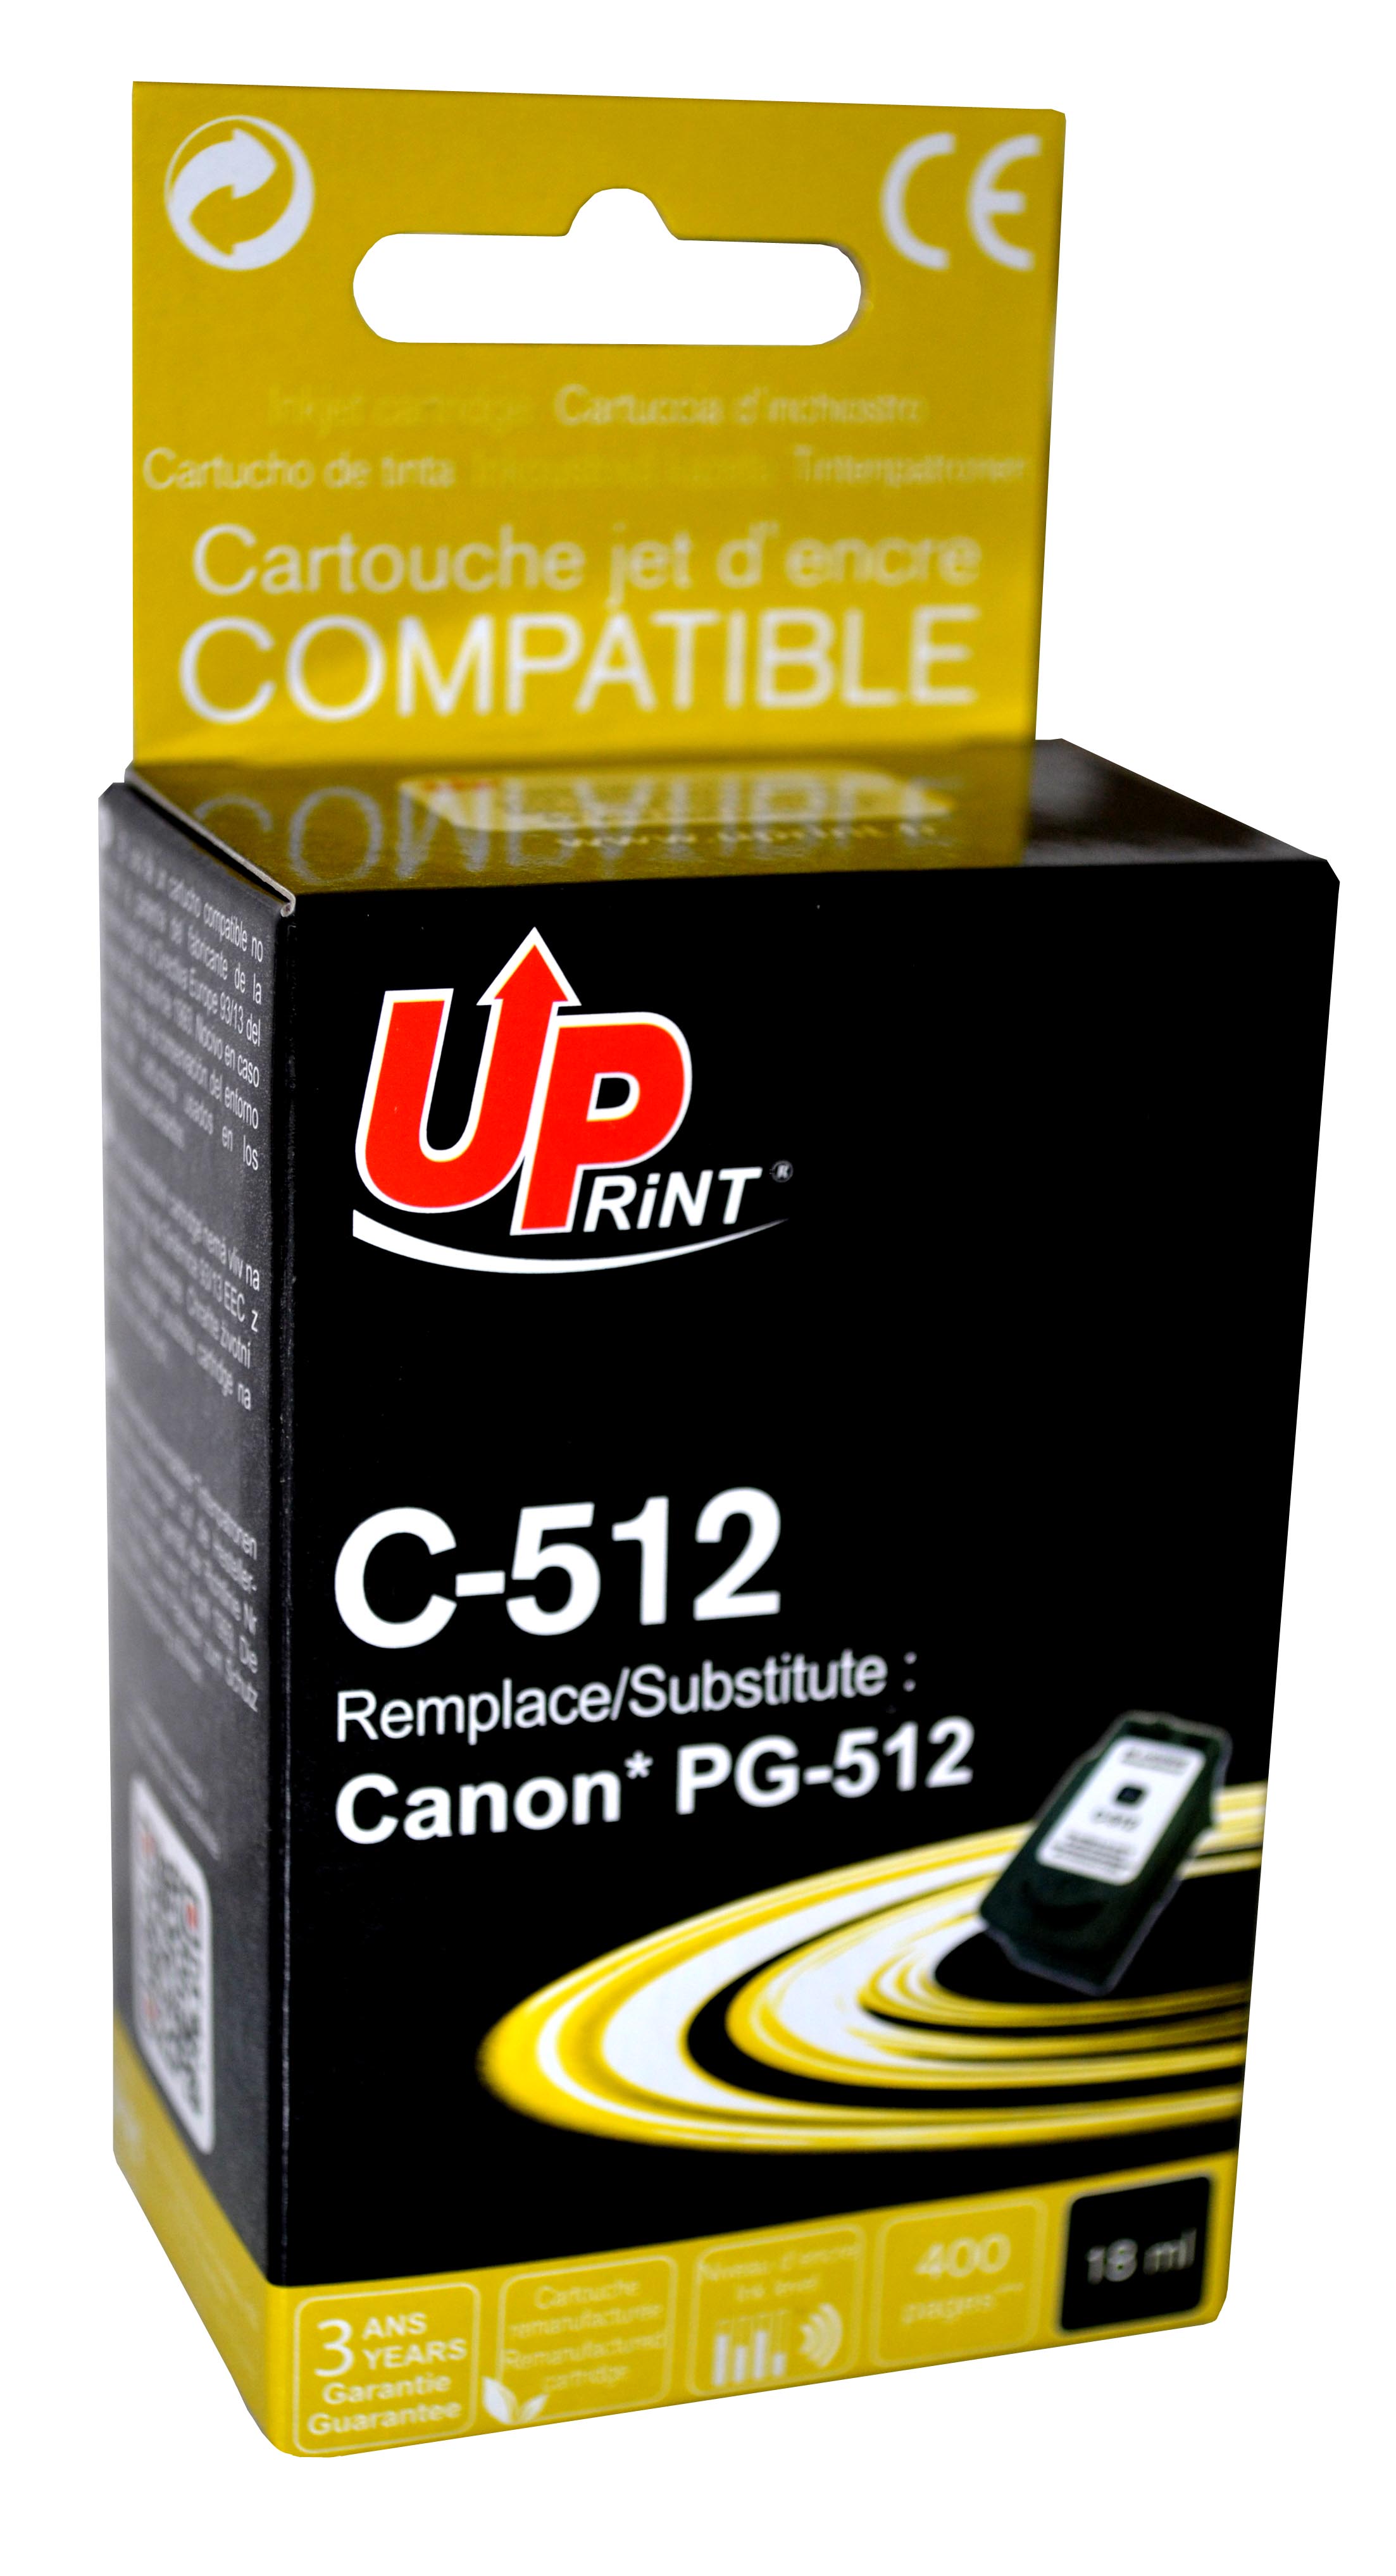 Cartouche encre UPrint compatible CANON PG-512 noir